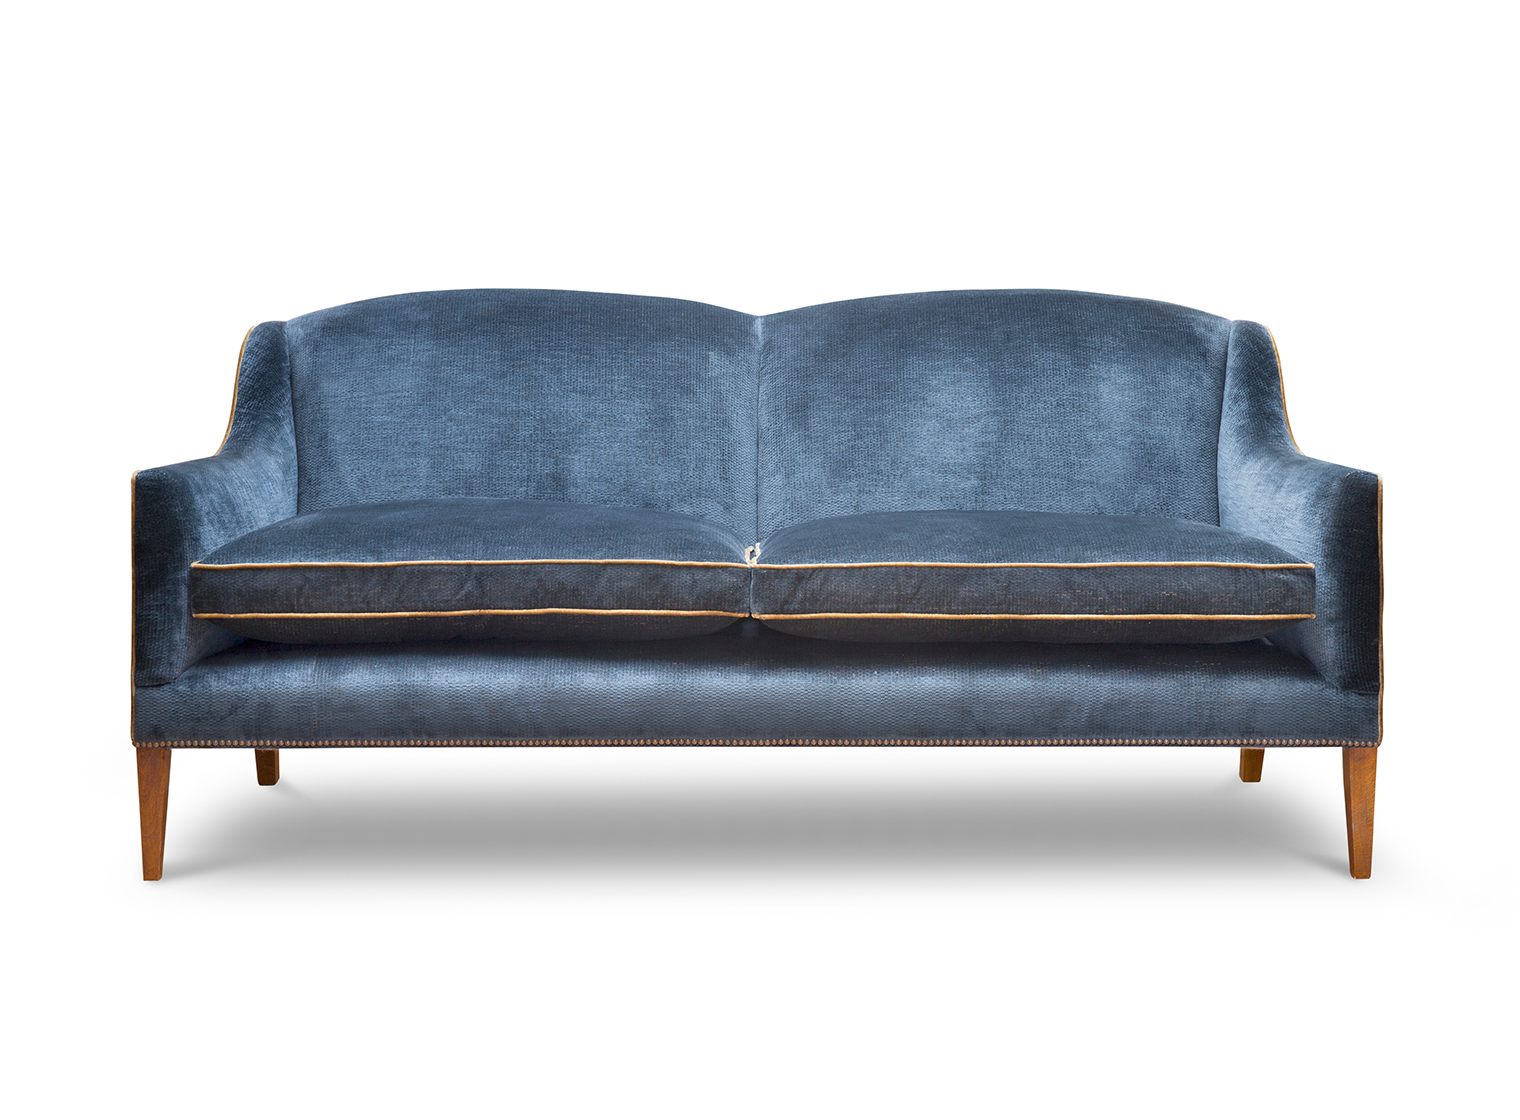 Edgar 2.5 seater sofa in Troilus velvet - Flint blue - Beaumont & Fletcher